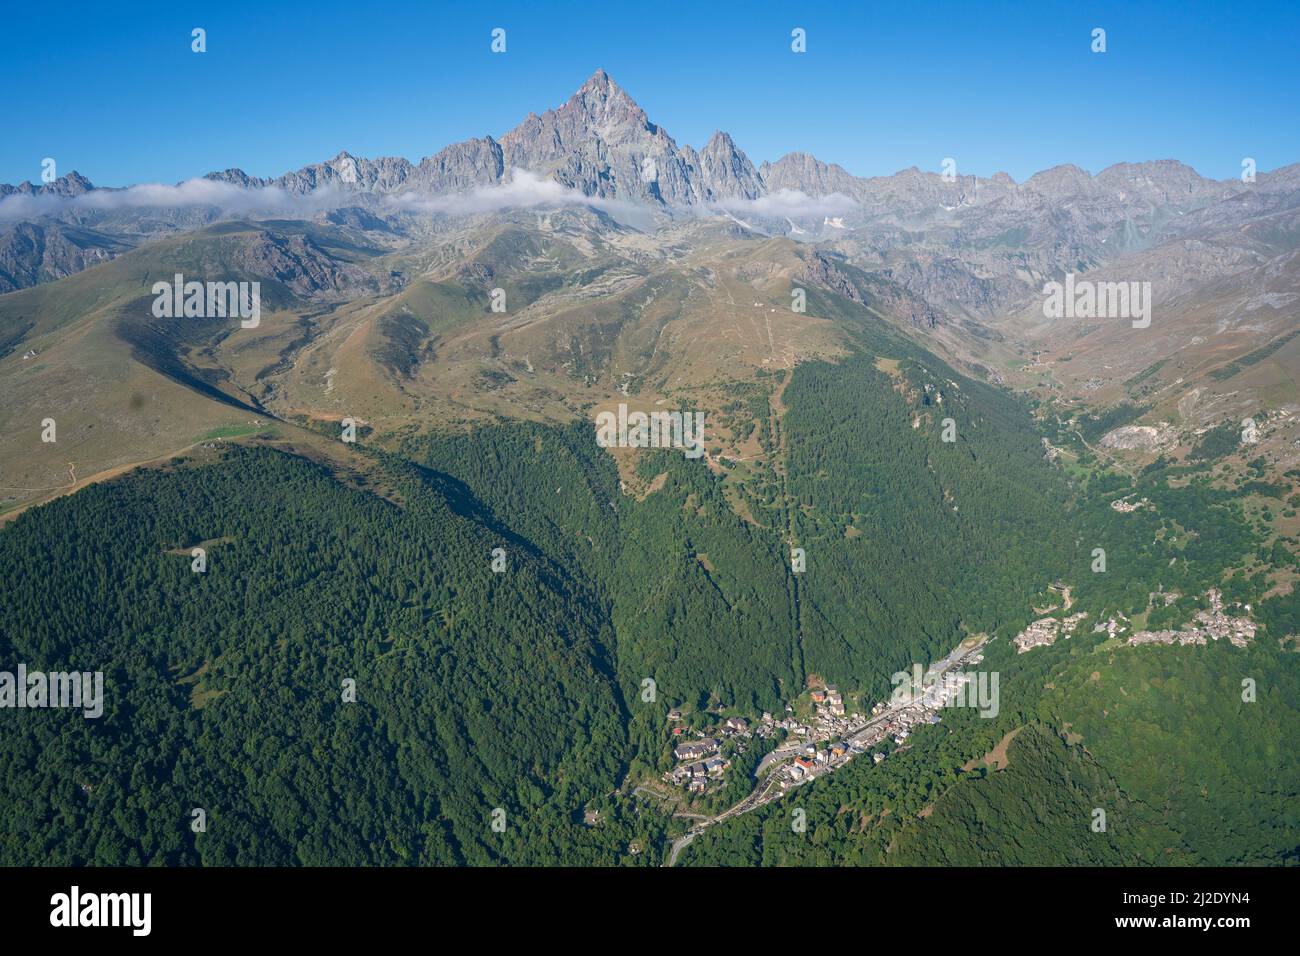 VISTA AÉREA. Monte Viso (3841m) visto desde el noreste con la ciudad de Crissolo en el Valle del Po. Provincia de Cuneo, Piamonte, Italia. Foto de stock